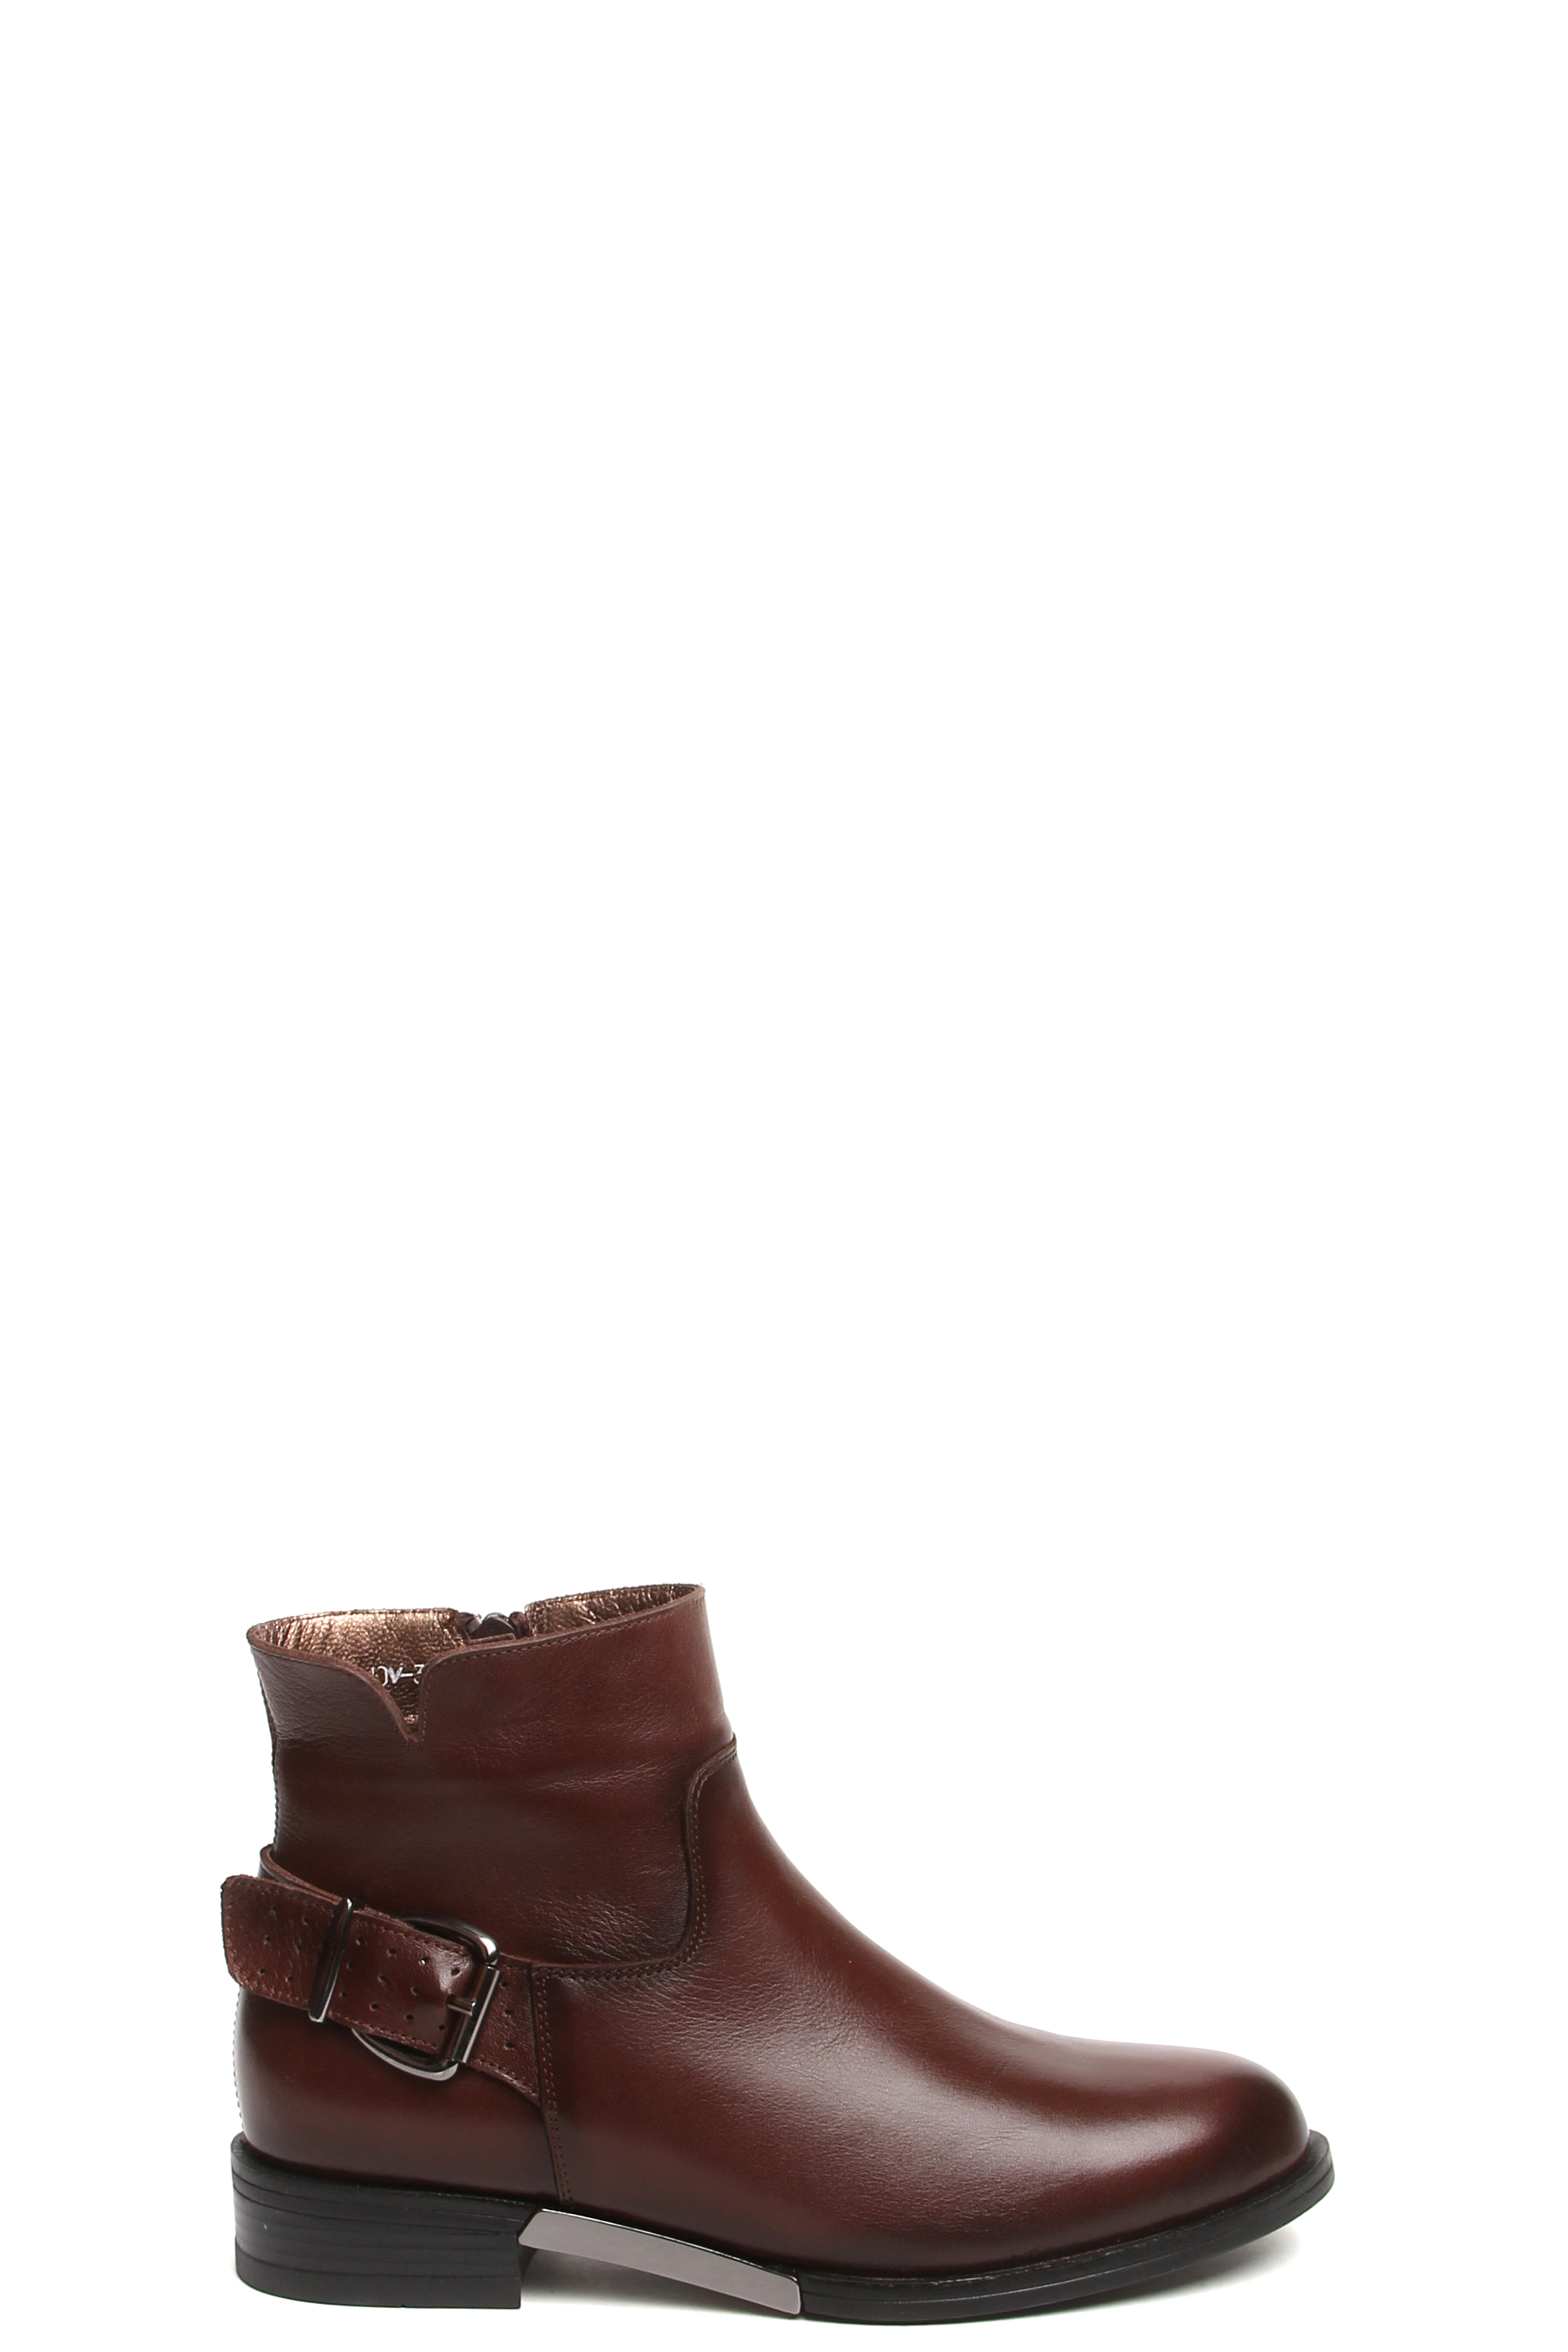 Ботинки MILANA 182696-3-120V коричневый - купить 7490